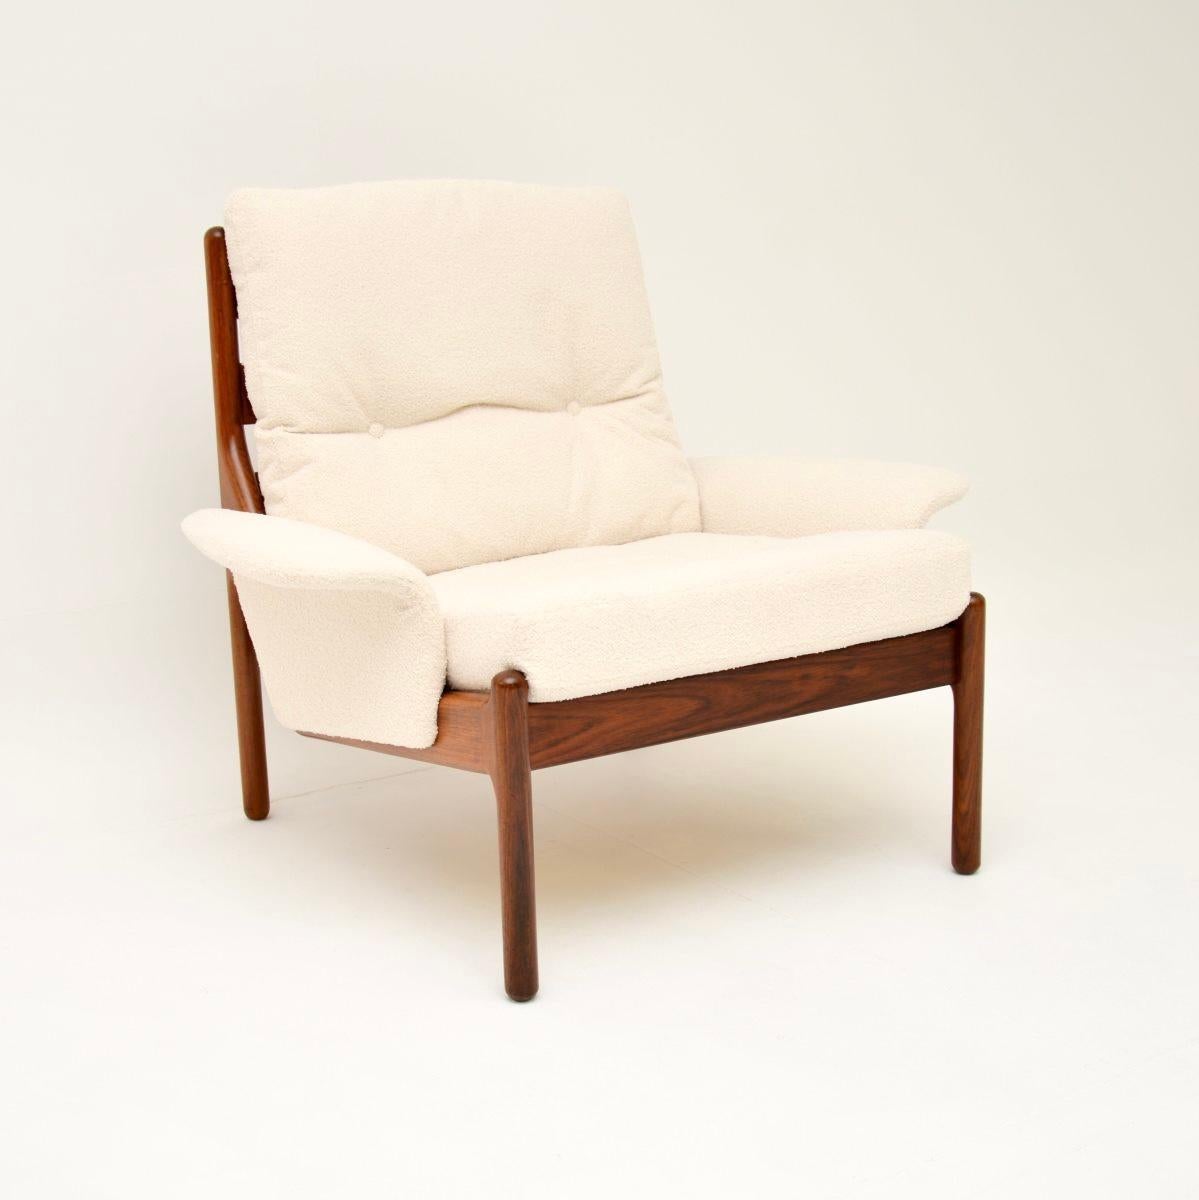 Ein atemberaubender und äußerst seltener dänischer Vintage-Sessel von Illum Wikkelso. Es wurde von Illum Wikkelso für Silkeborg Mobler entworfen und stammt etwa aus den 1960er Jahren.

Die Qualität ist absolut hervorragend, das Design ist